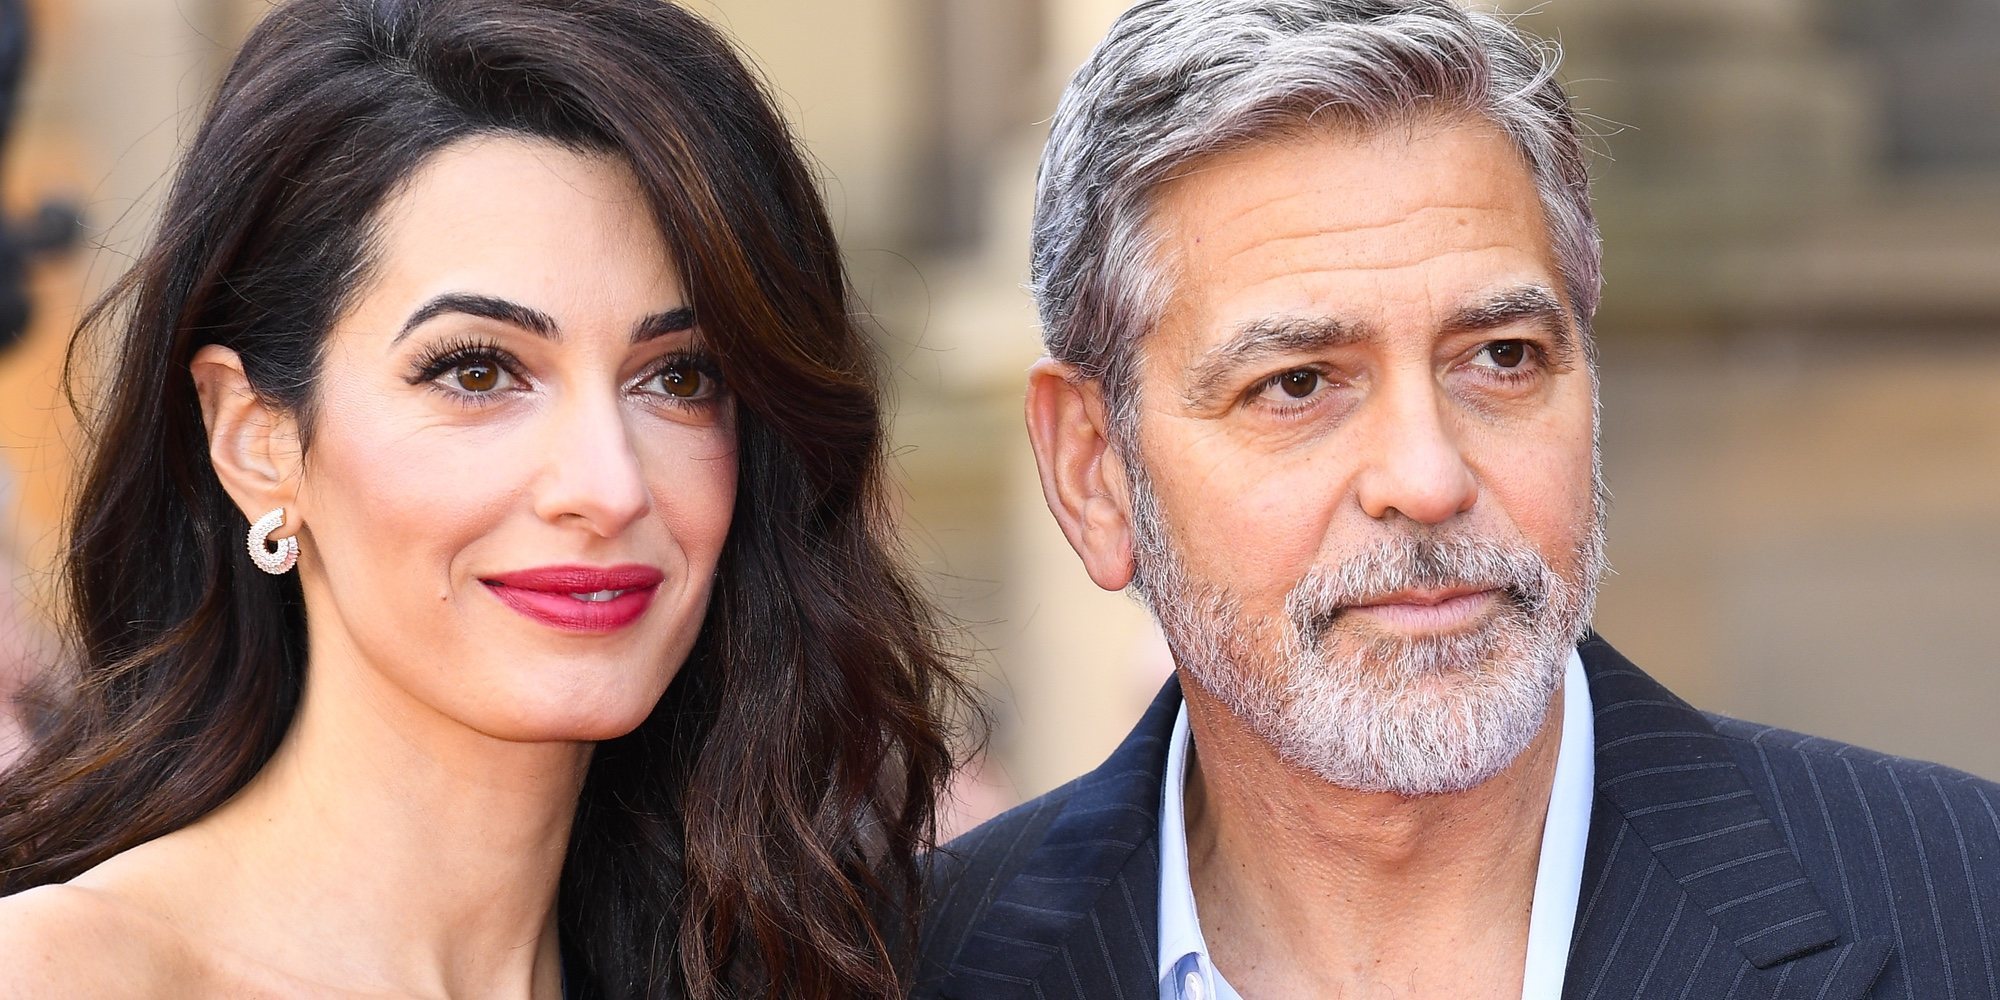 George y Amal Clooney vuelven a aparecer muy románticos y sonrientes en un acto benéfico